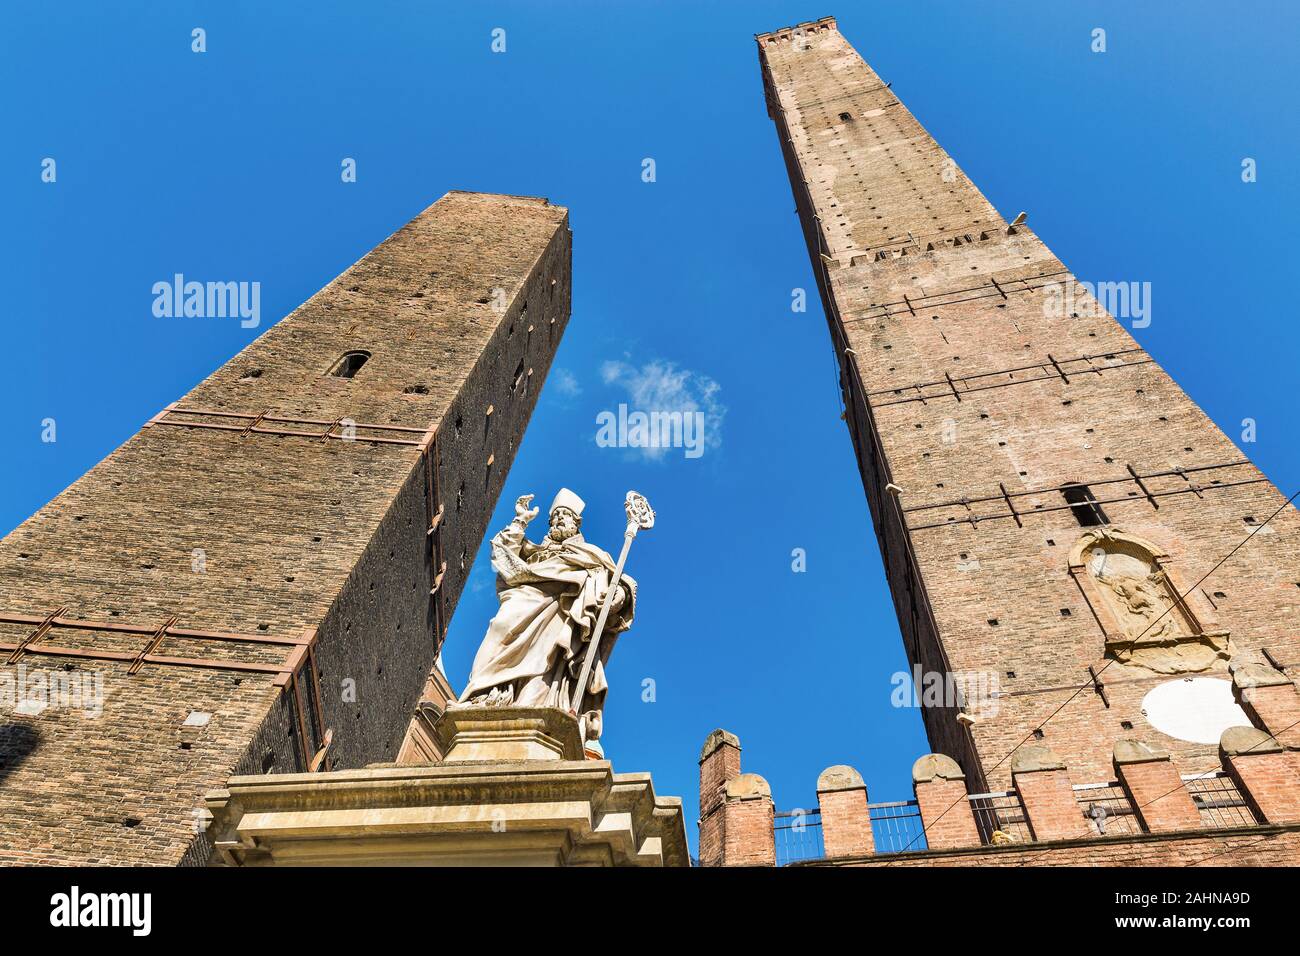 Statua di San Petronio e due torri: Asinelli e Garisenda a Bologna, Italia. Foto Stock